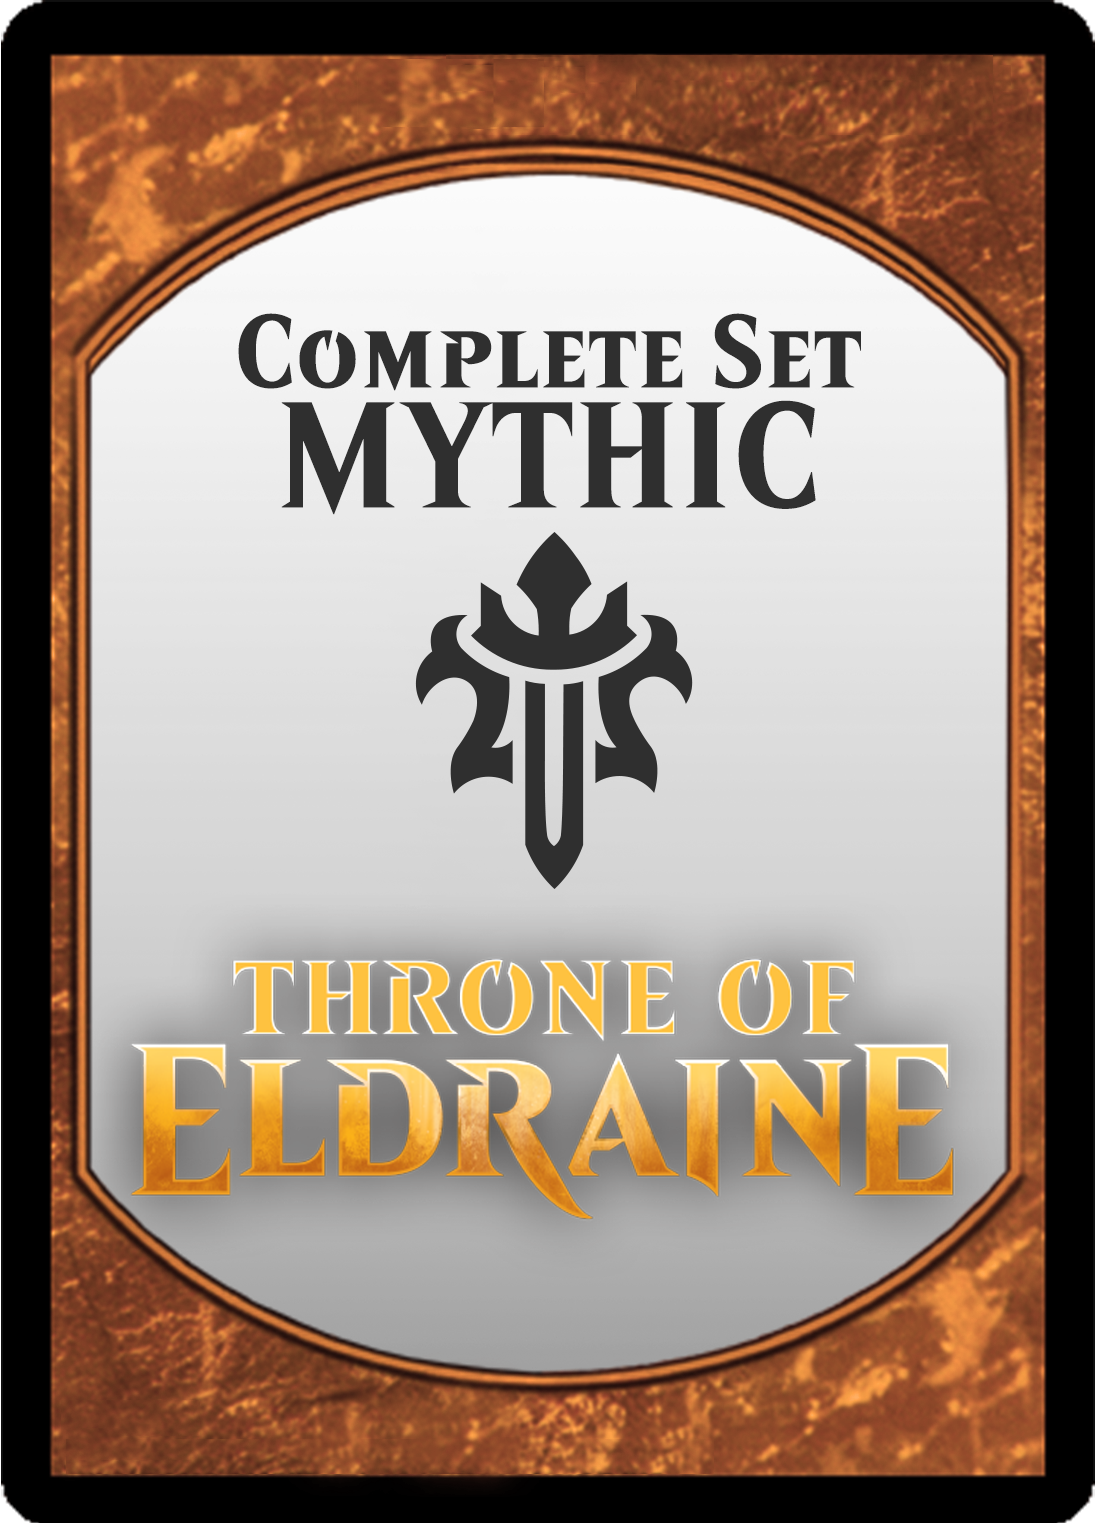 Throne of Eldraine: Mythic Set